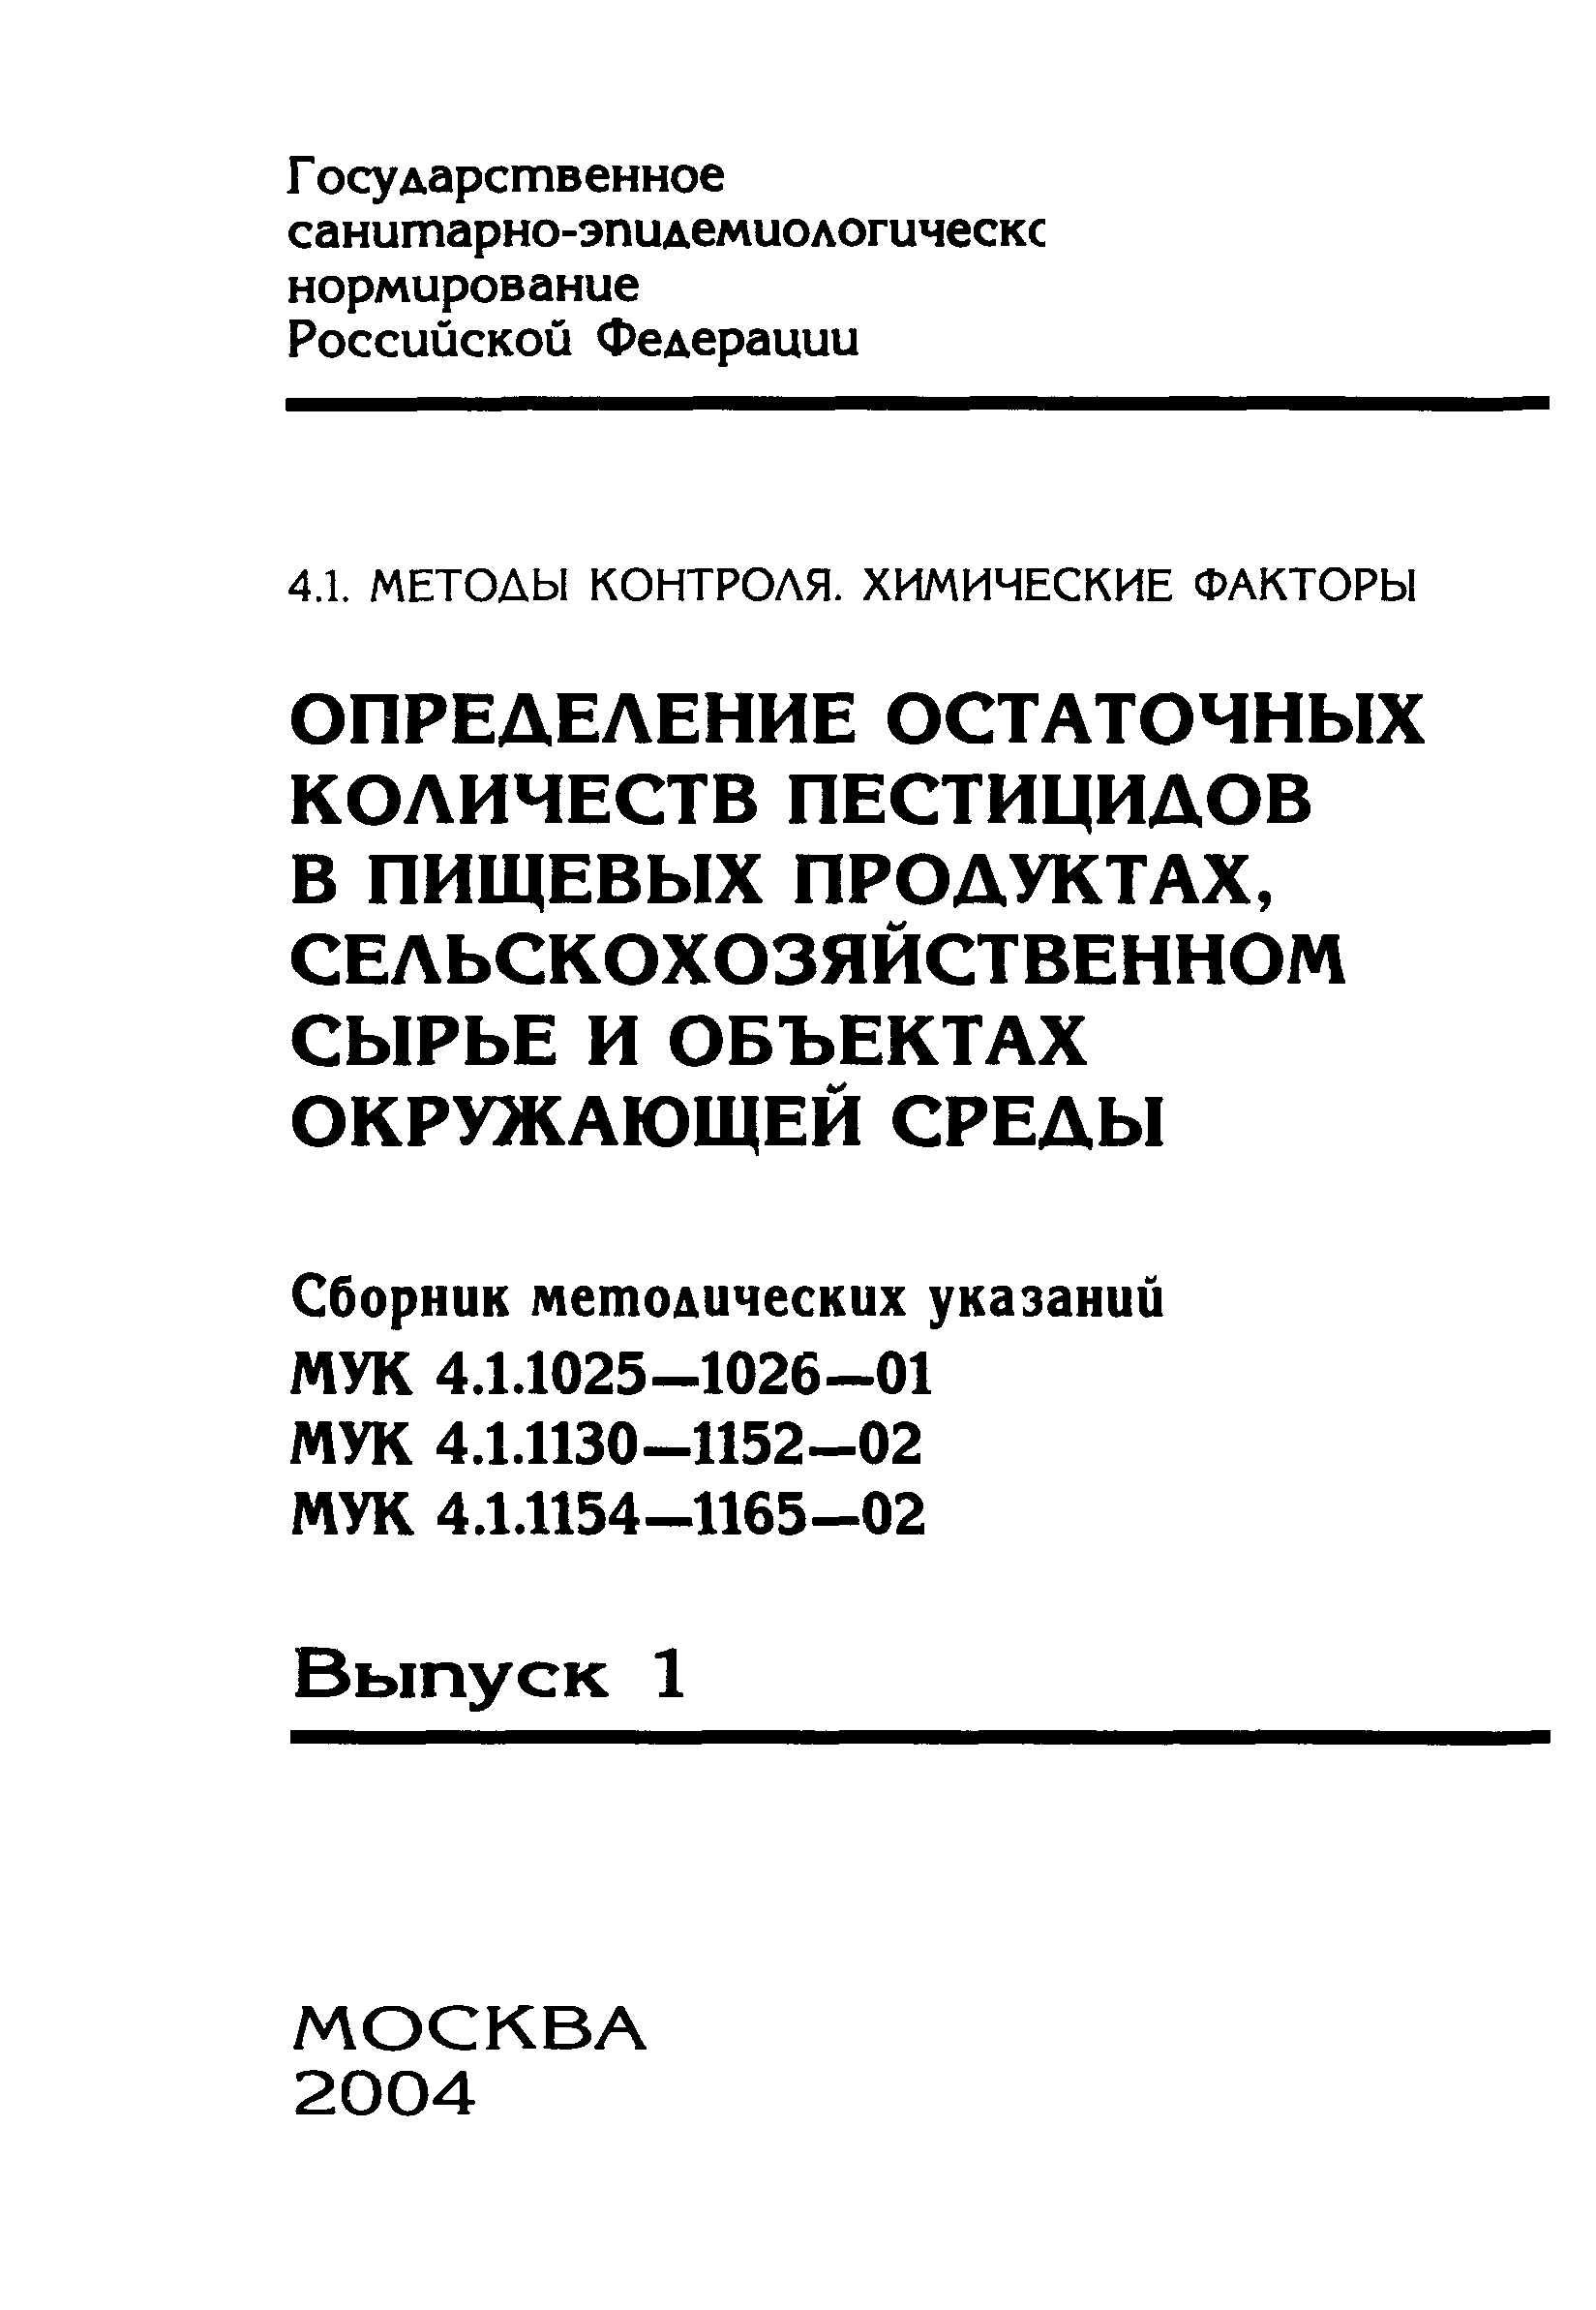 МУК 4.1.1156-02